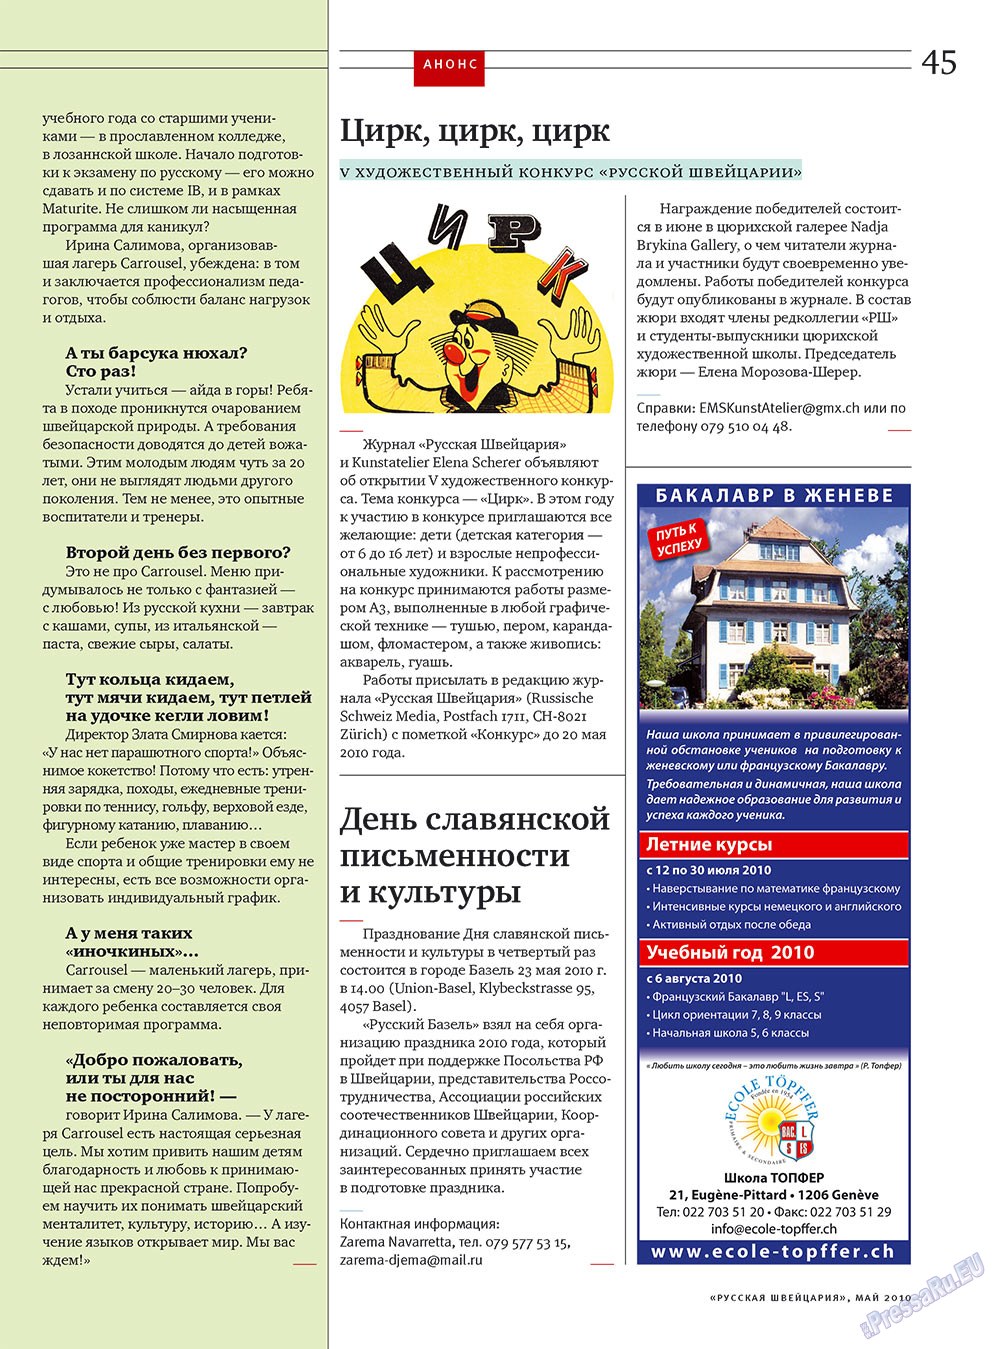 Русская Швейцария (журнал). 2010 год, номер 4, стр. 45